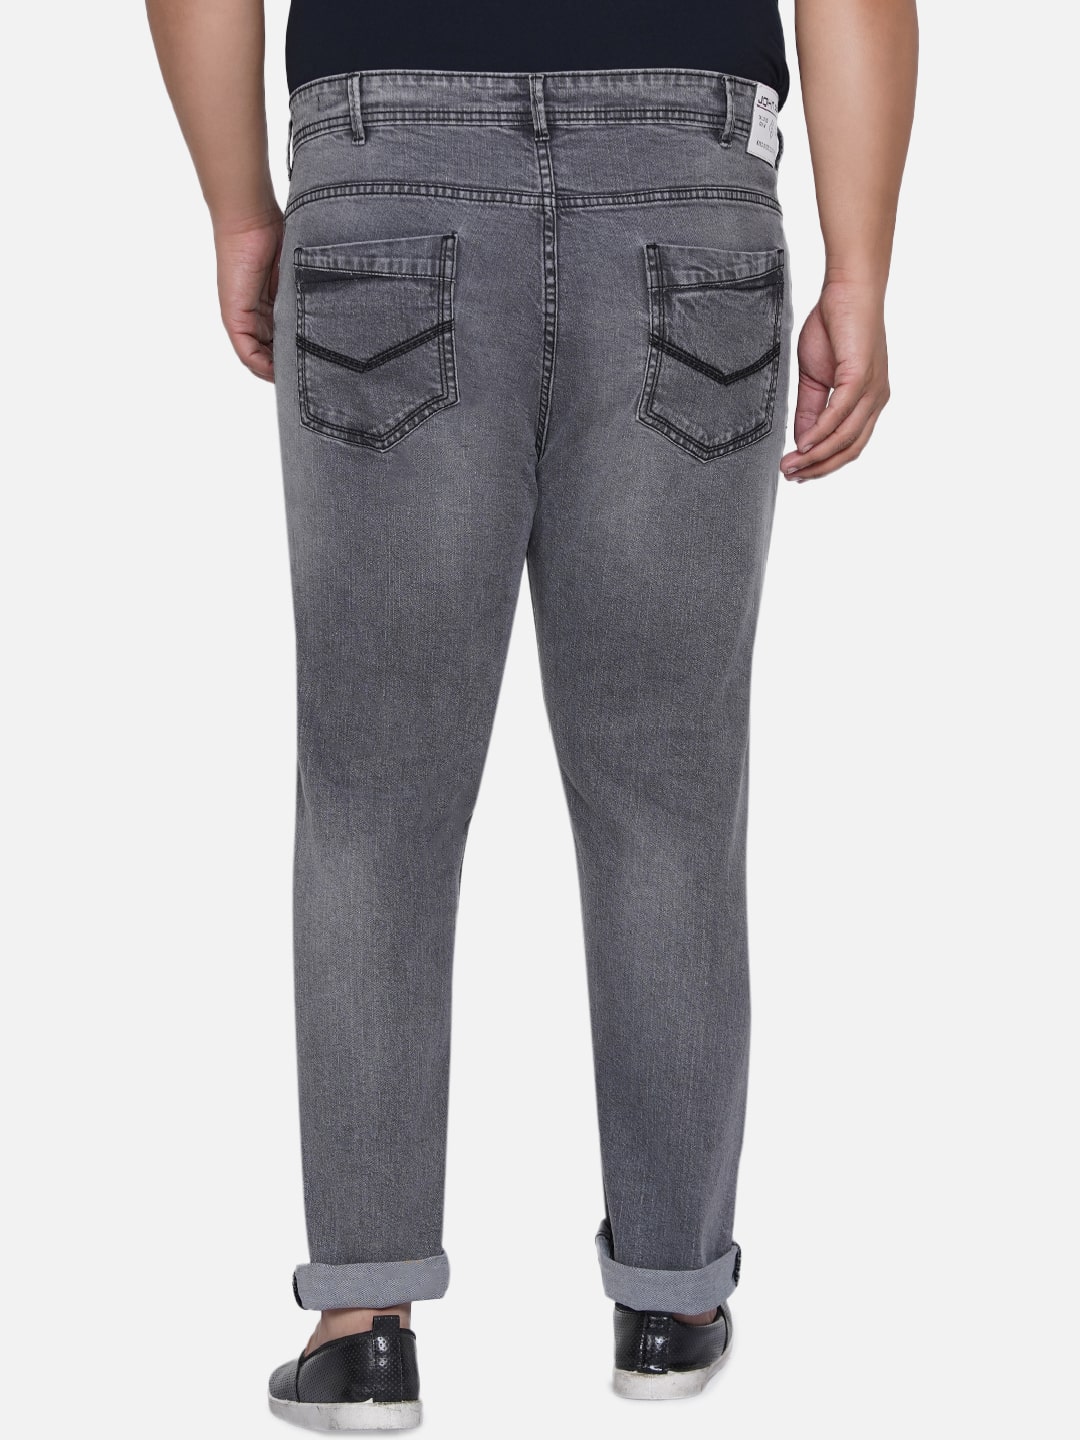 bottomwear/jeans/EJPJ25011/ejpj25011-3.jpg